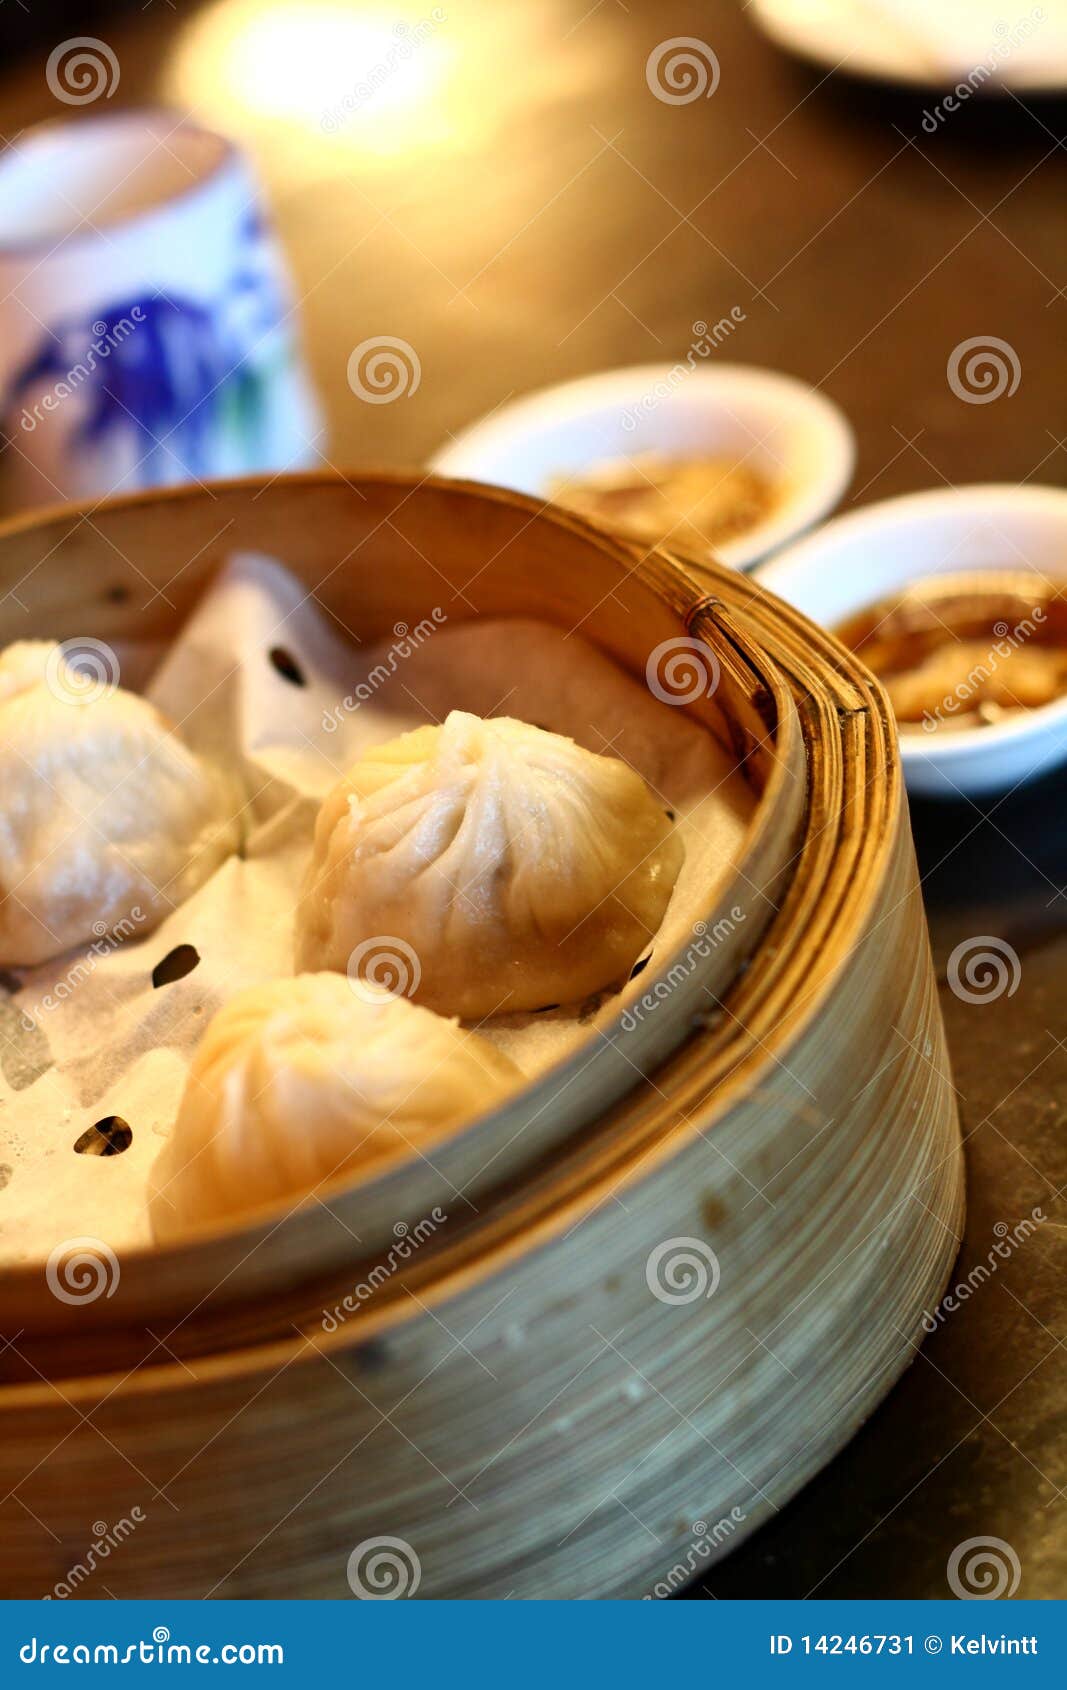 Shanghai Xiao Long Bao stock image. Image of asia, dough - 14246731